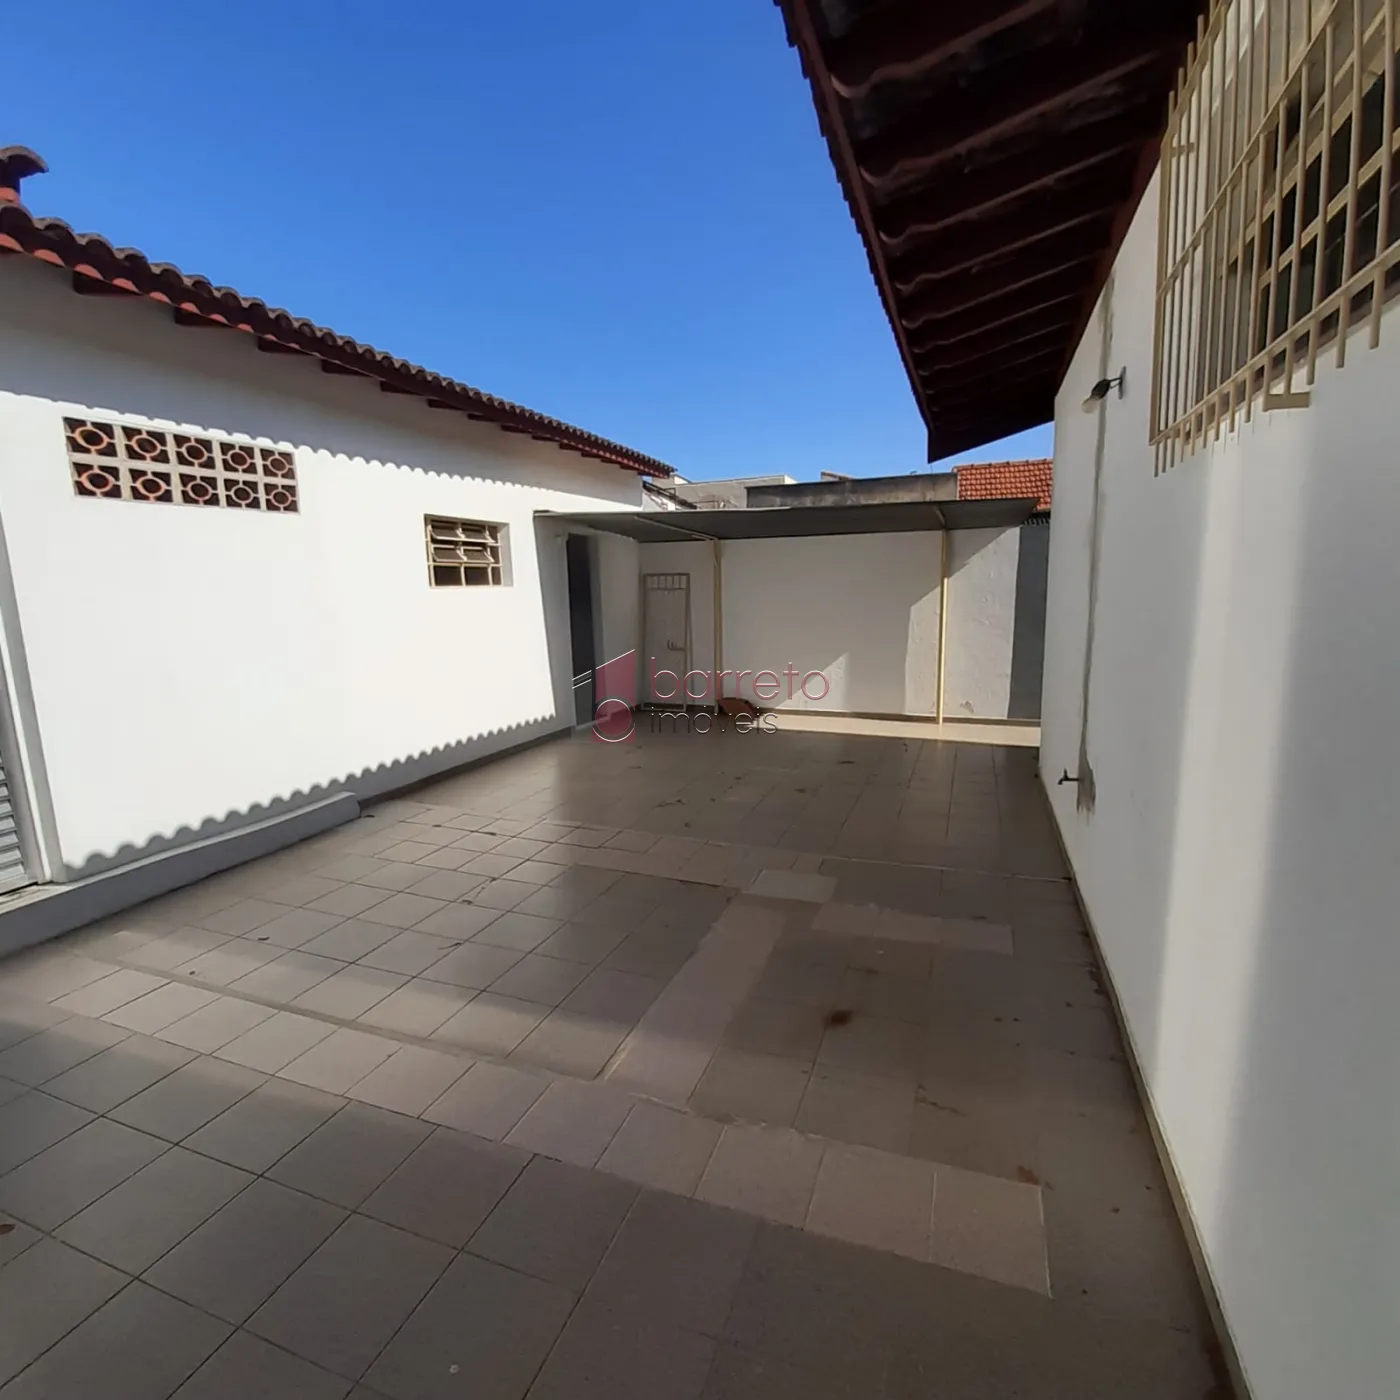 Comprar Casa / Térrea em Jundiaí R$ 1.200.000,00 - Foto 28